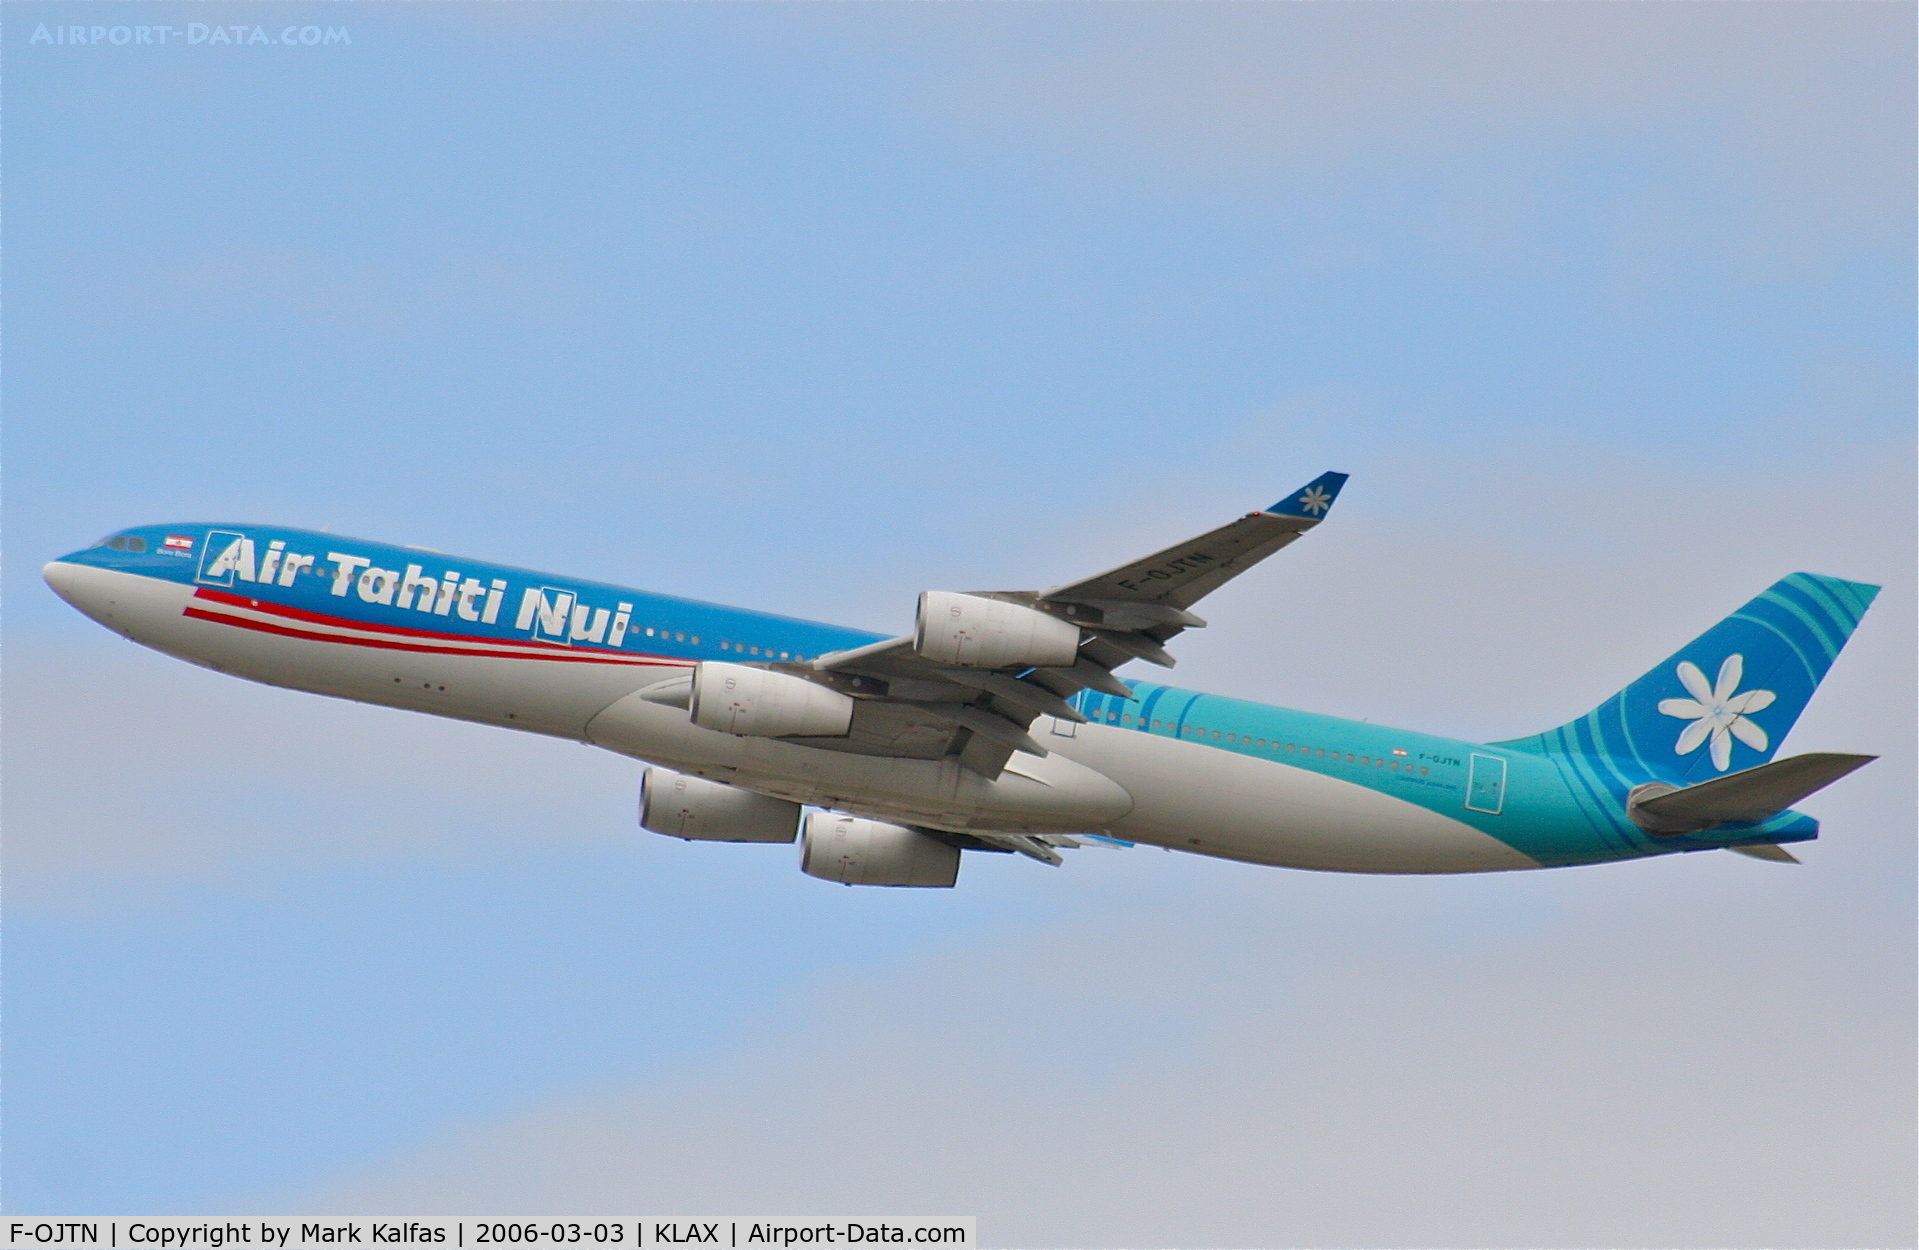 F-OJTN, 2001 Airbus A340-313 C/N 395, Air Tahiti Nui A340-313, 25R departure KLAX.